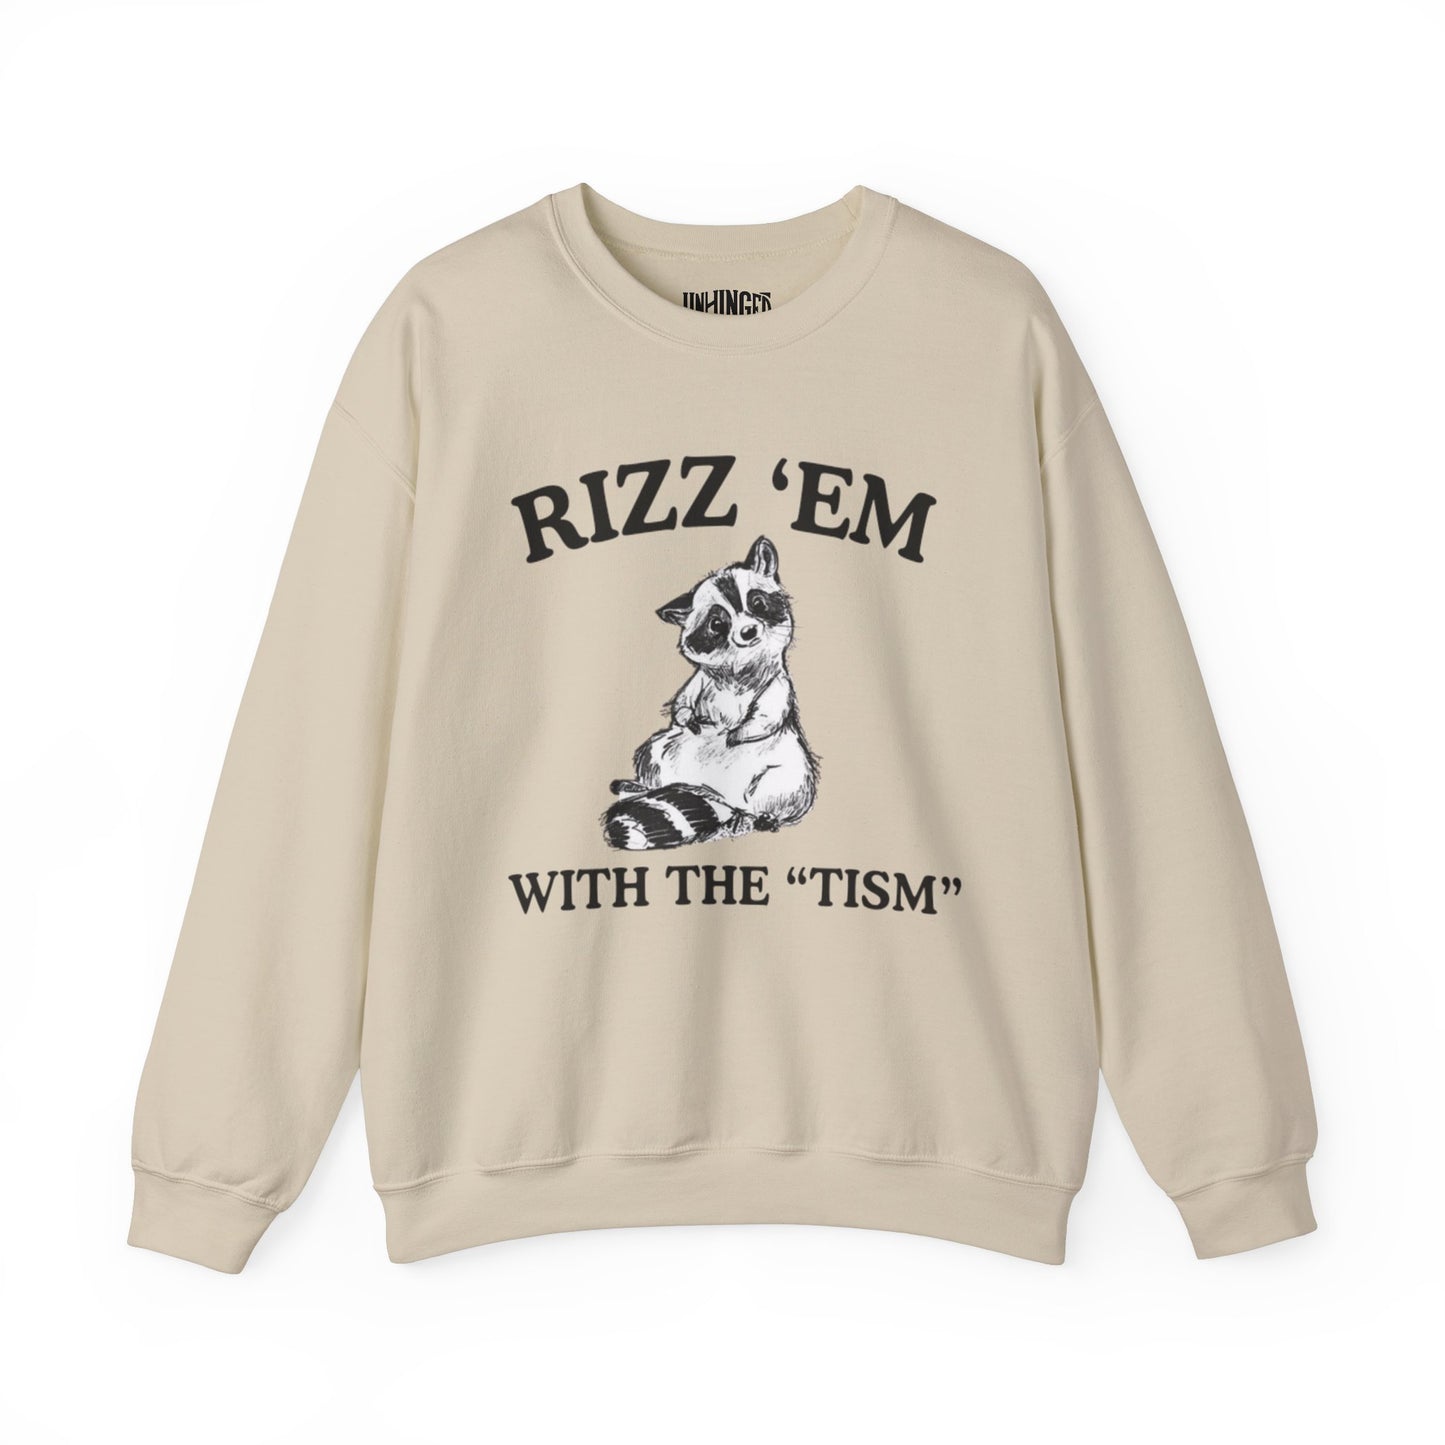 Rizz "Em with "TISM"™ Crewneck Sweatshirt